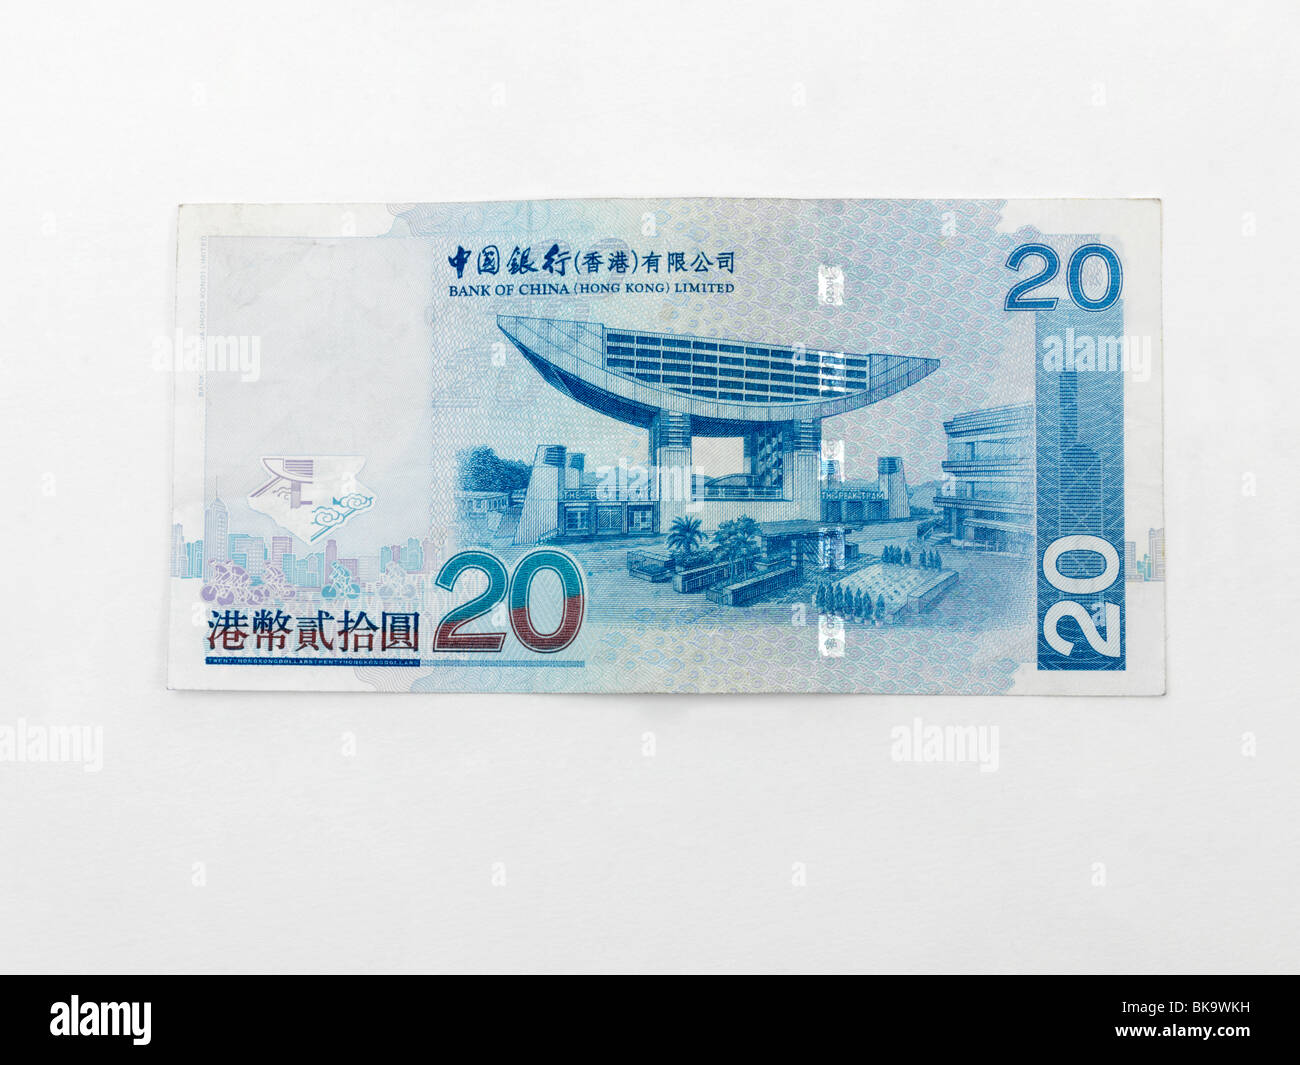 Hong Kong 20 Dollars Banknote Issued By Bank Of China Stock Photo